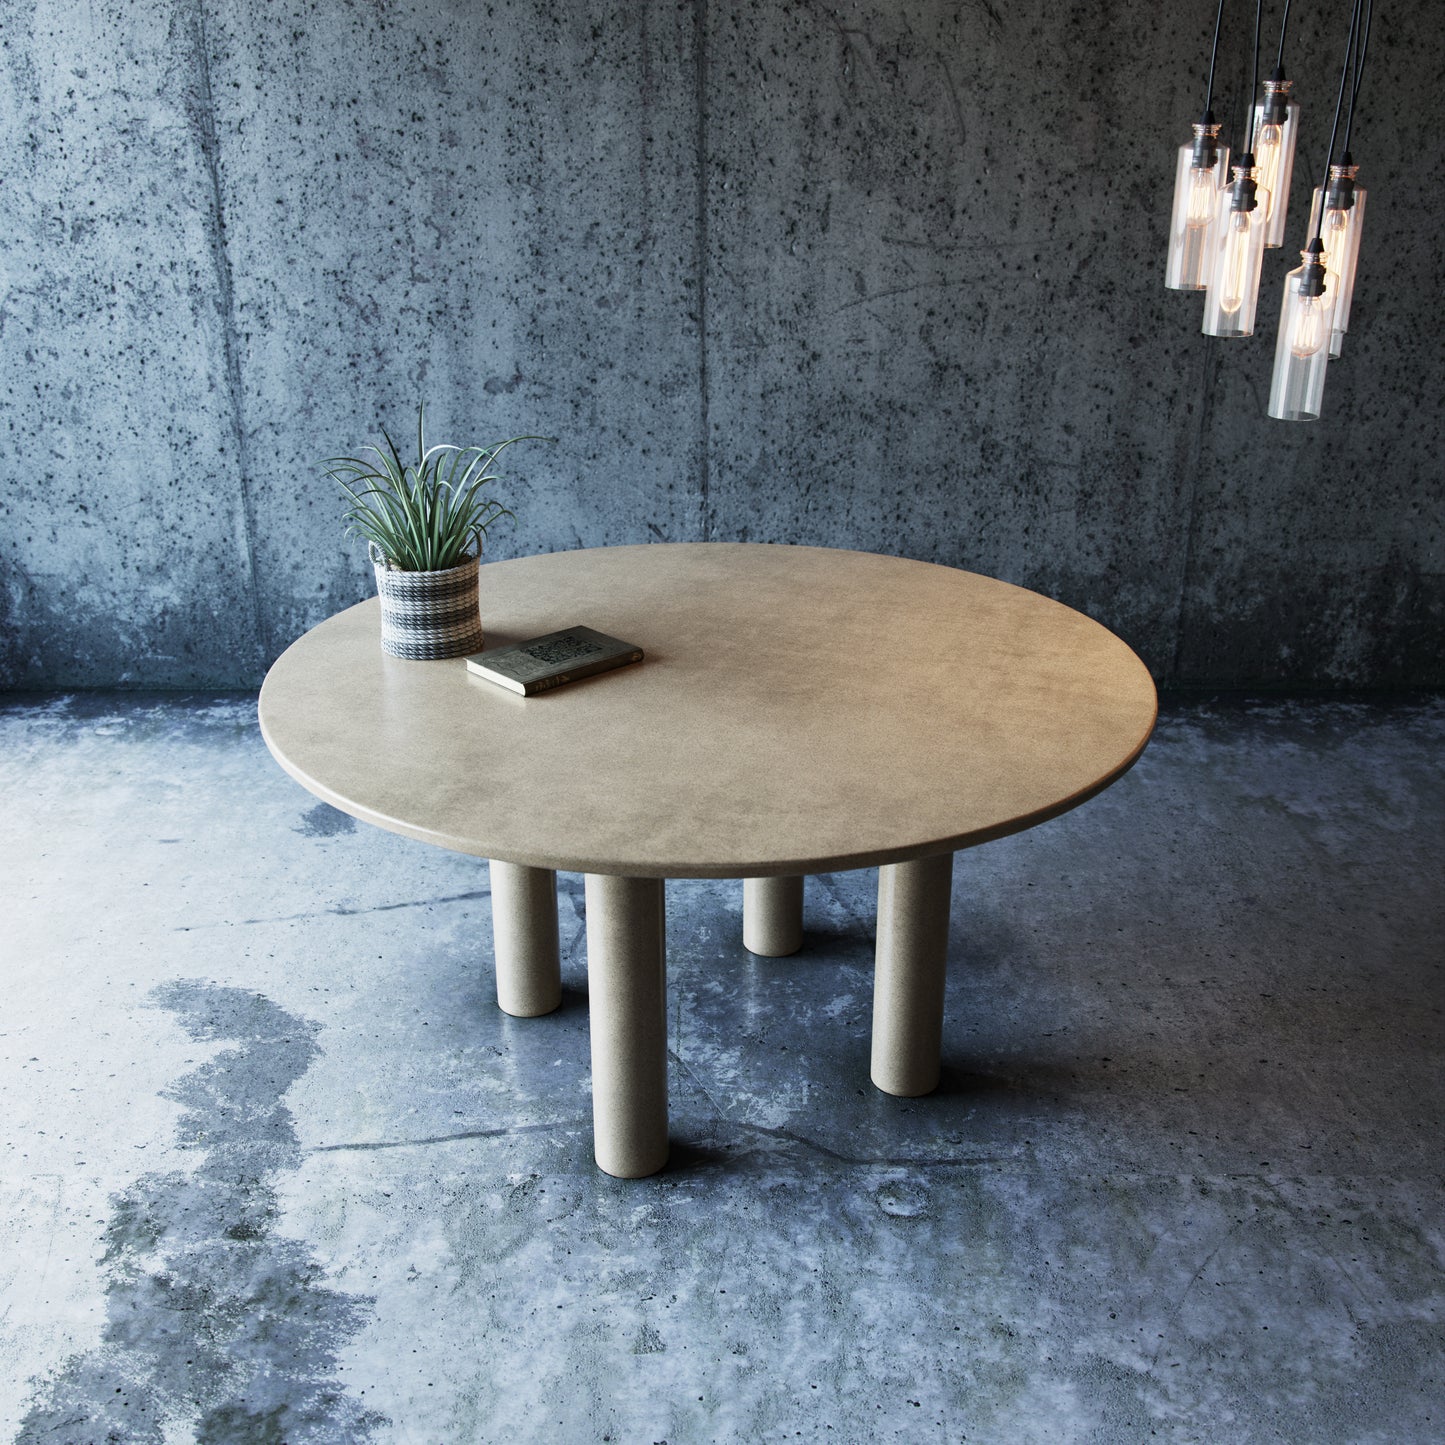 Blend concrete studio| Cement Table